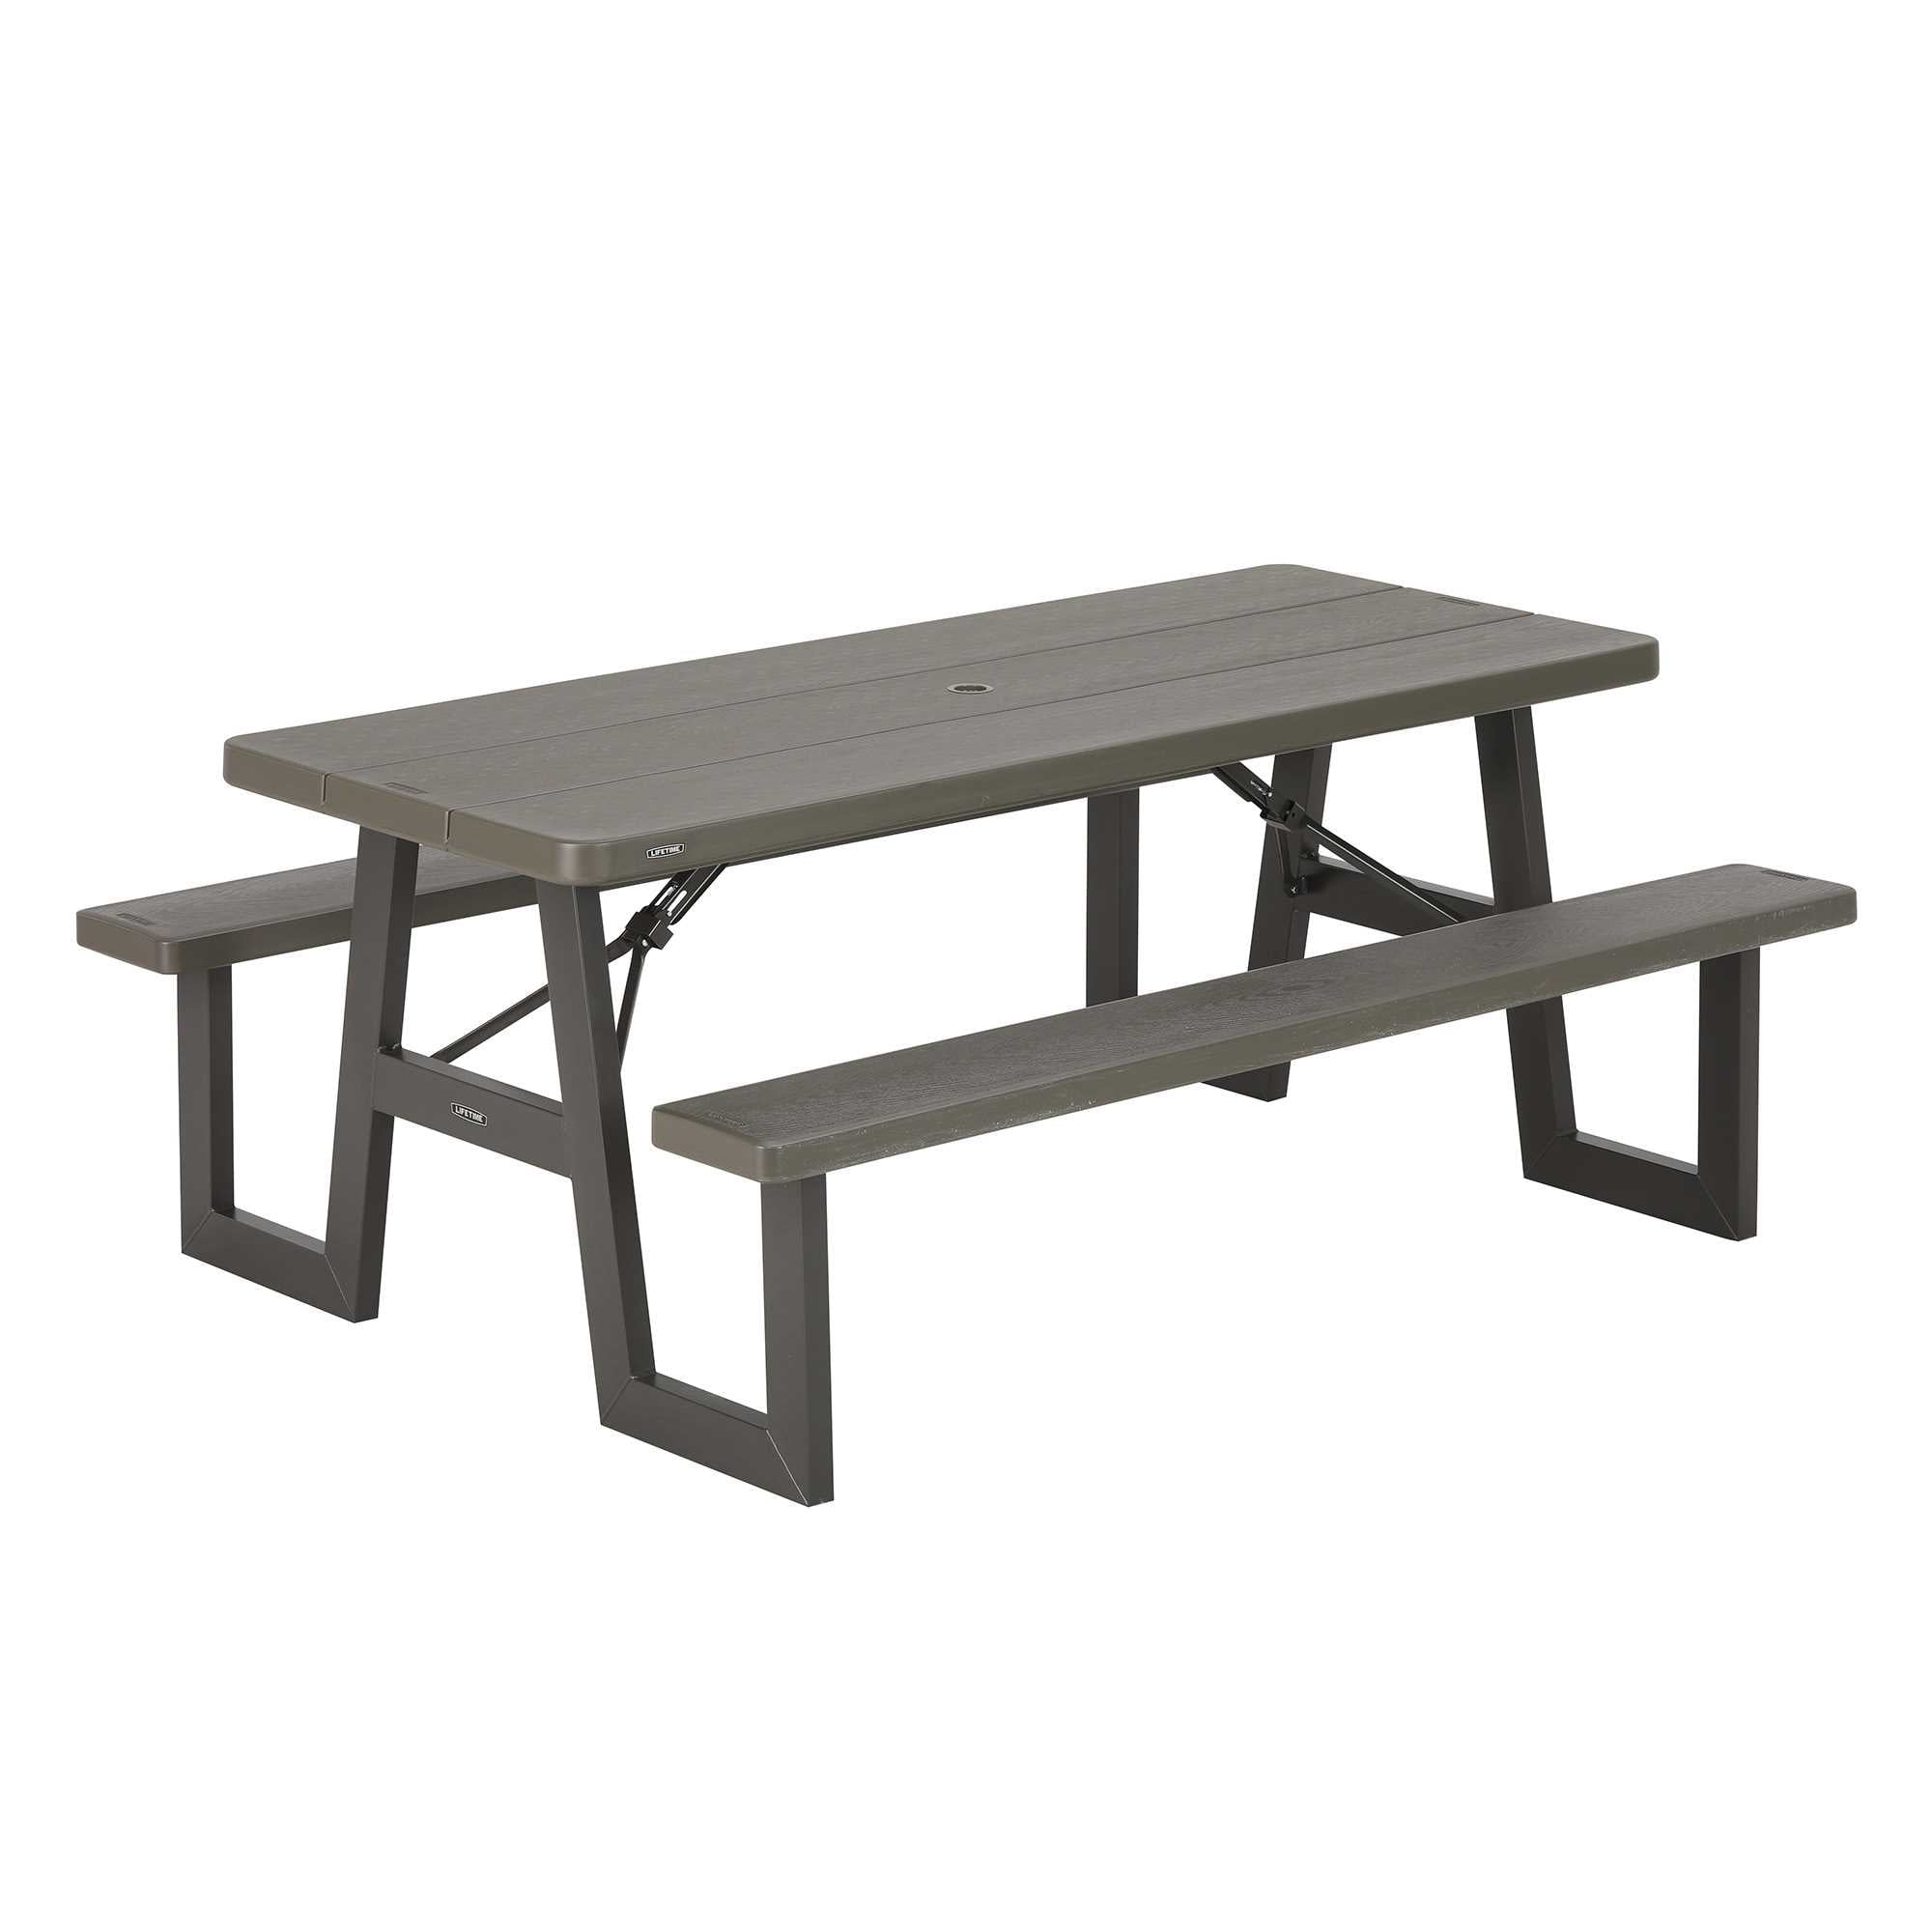 LIFETIME Table de pique-nique pliante de 6 pieds, gris rough cut